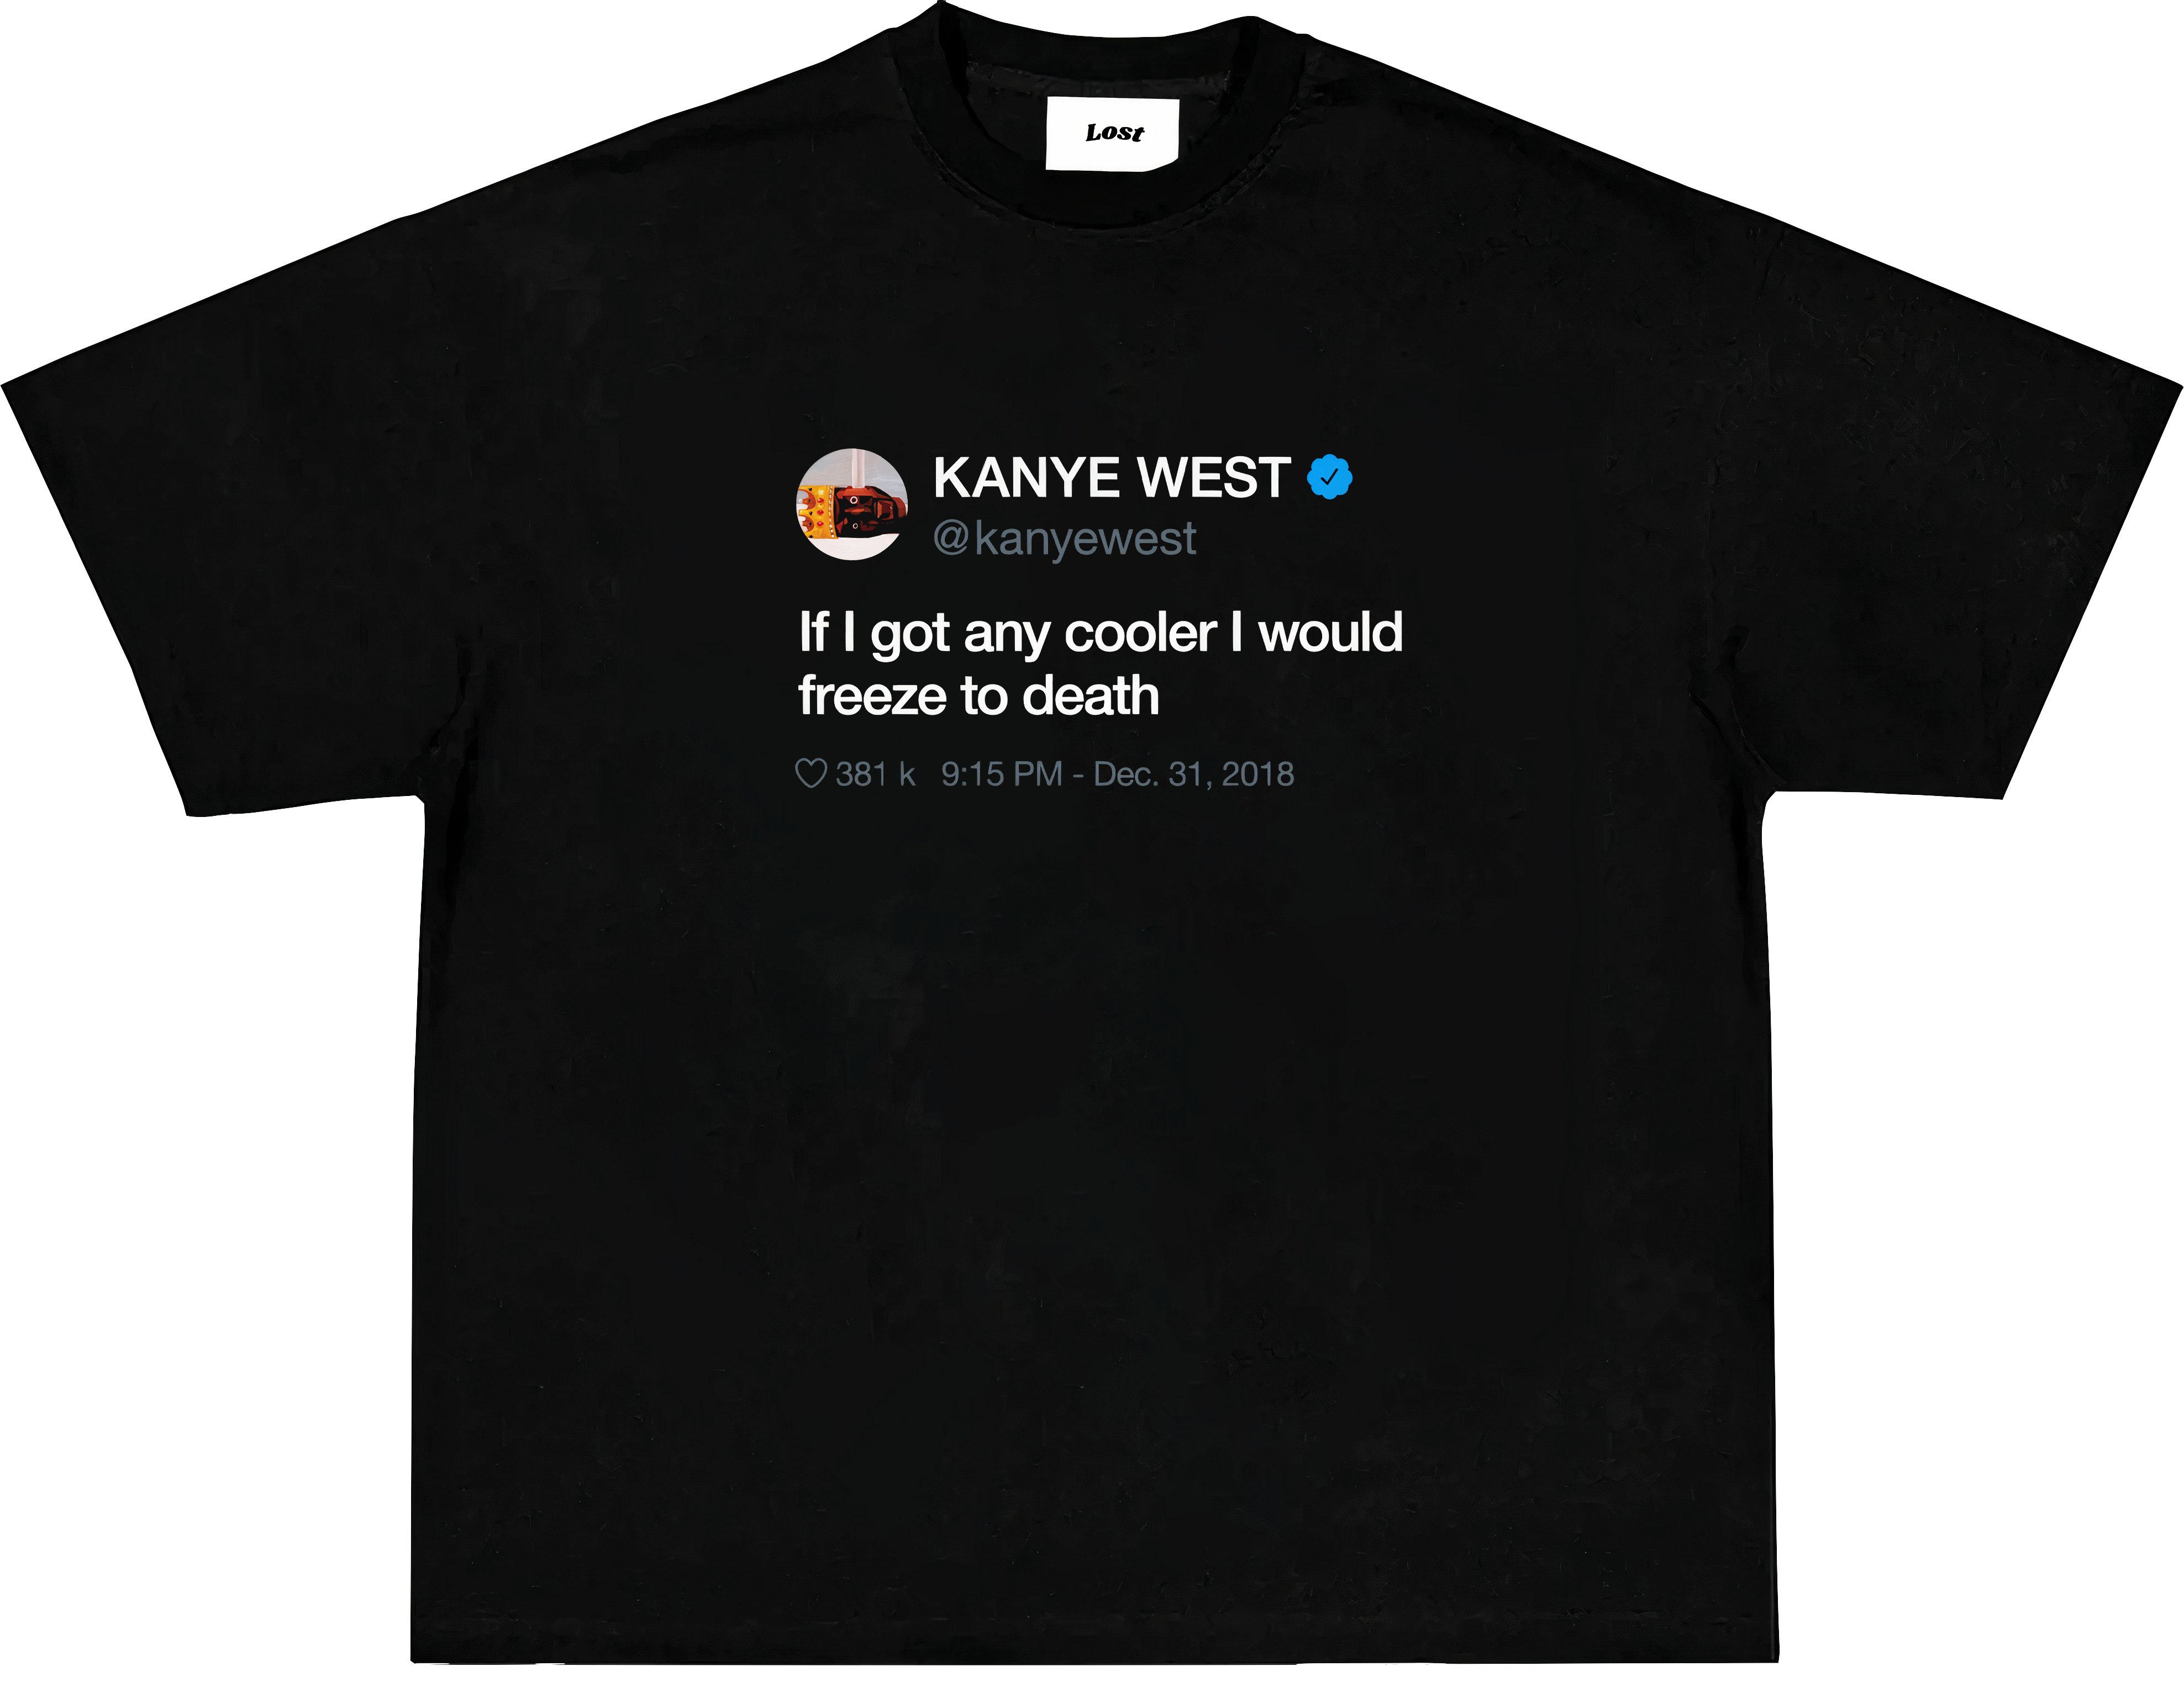 KANYE WEST "tweet" Oversized T-shirt